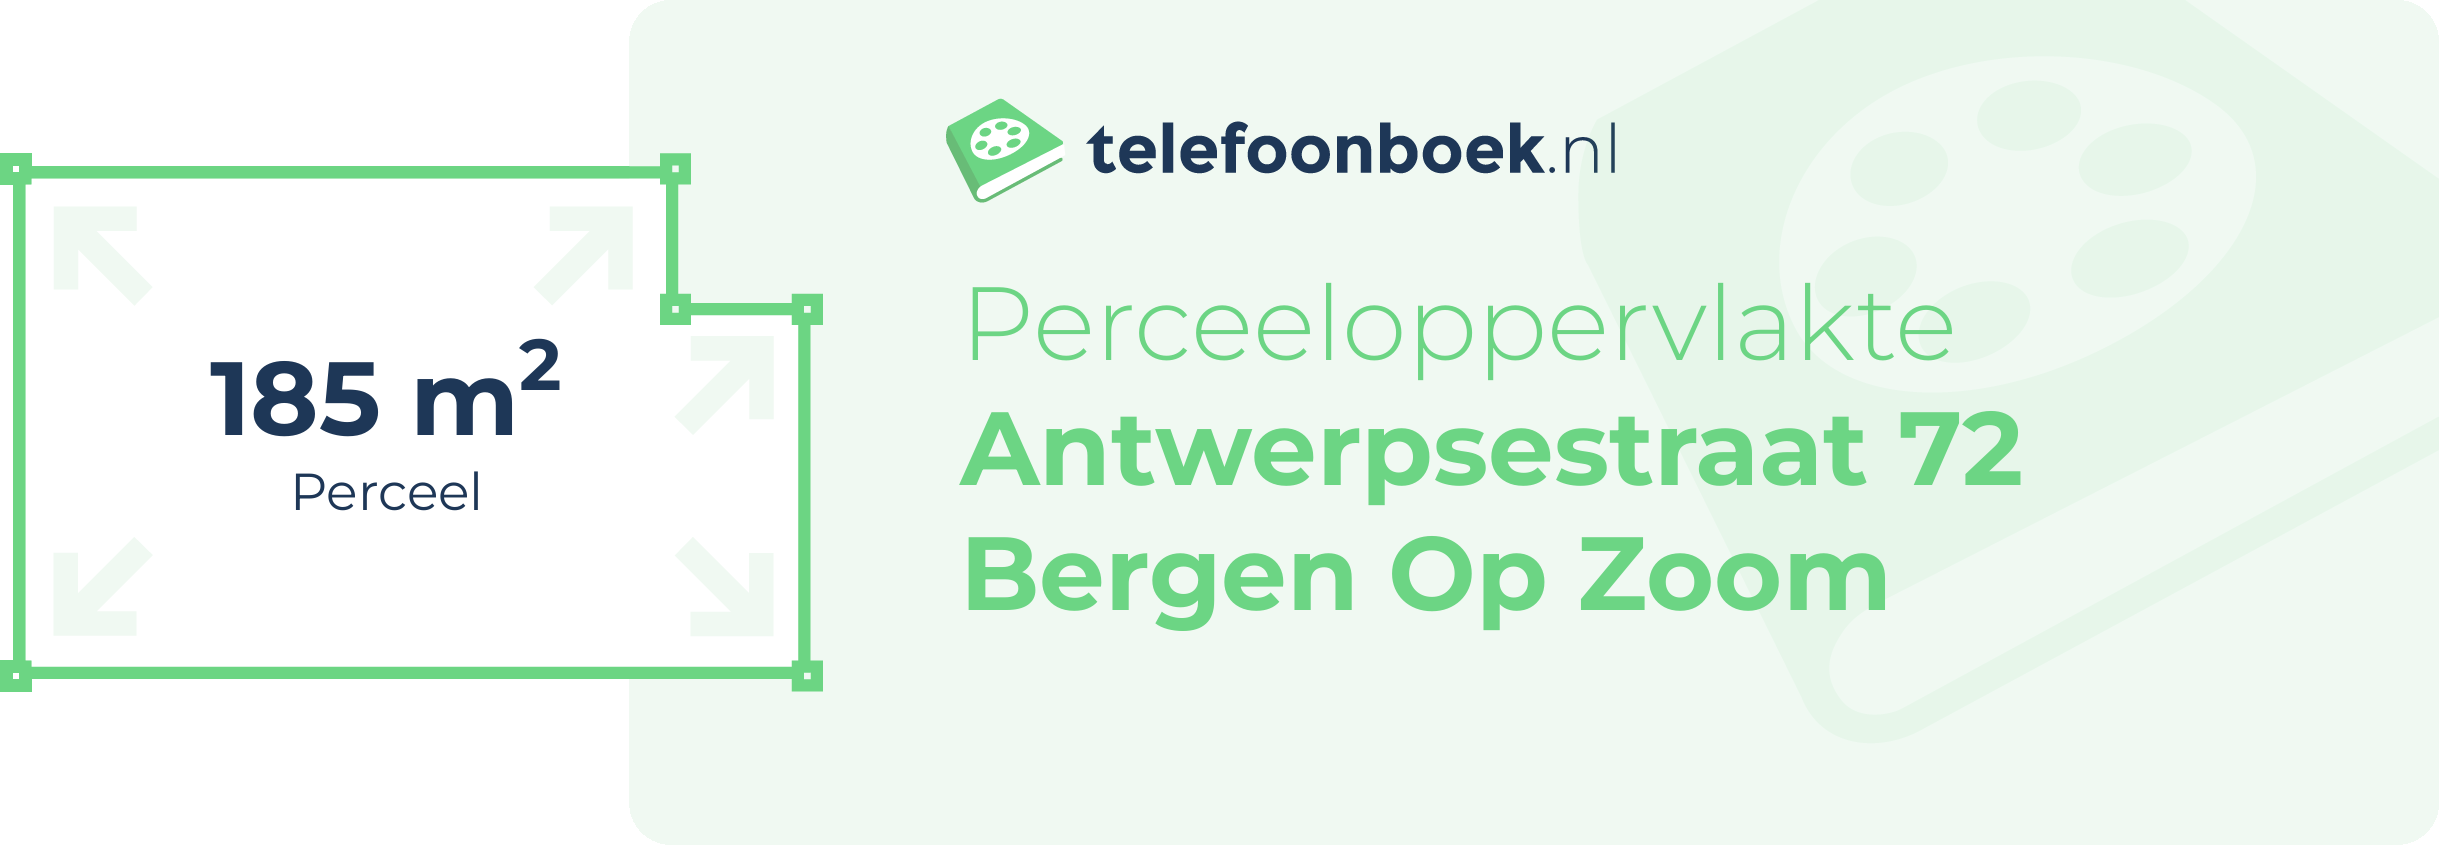 Perceeloppervlakte Antwerpsestraat 72 Bergen Op Zoom